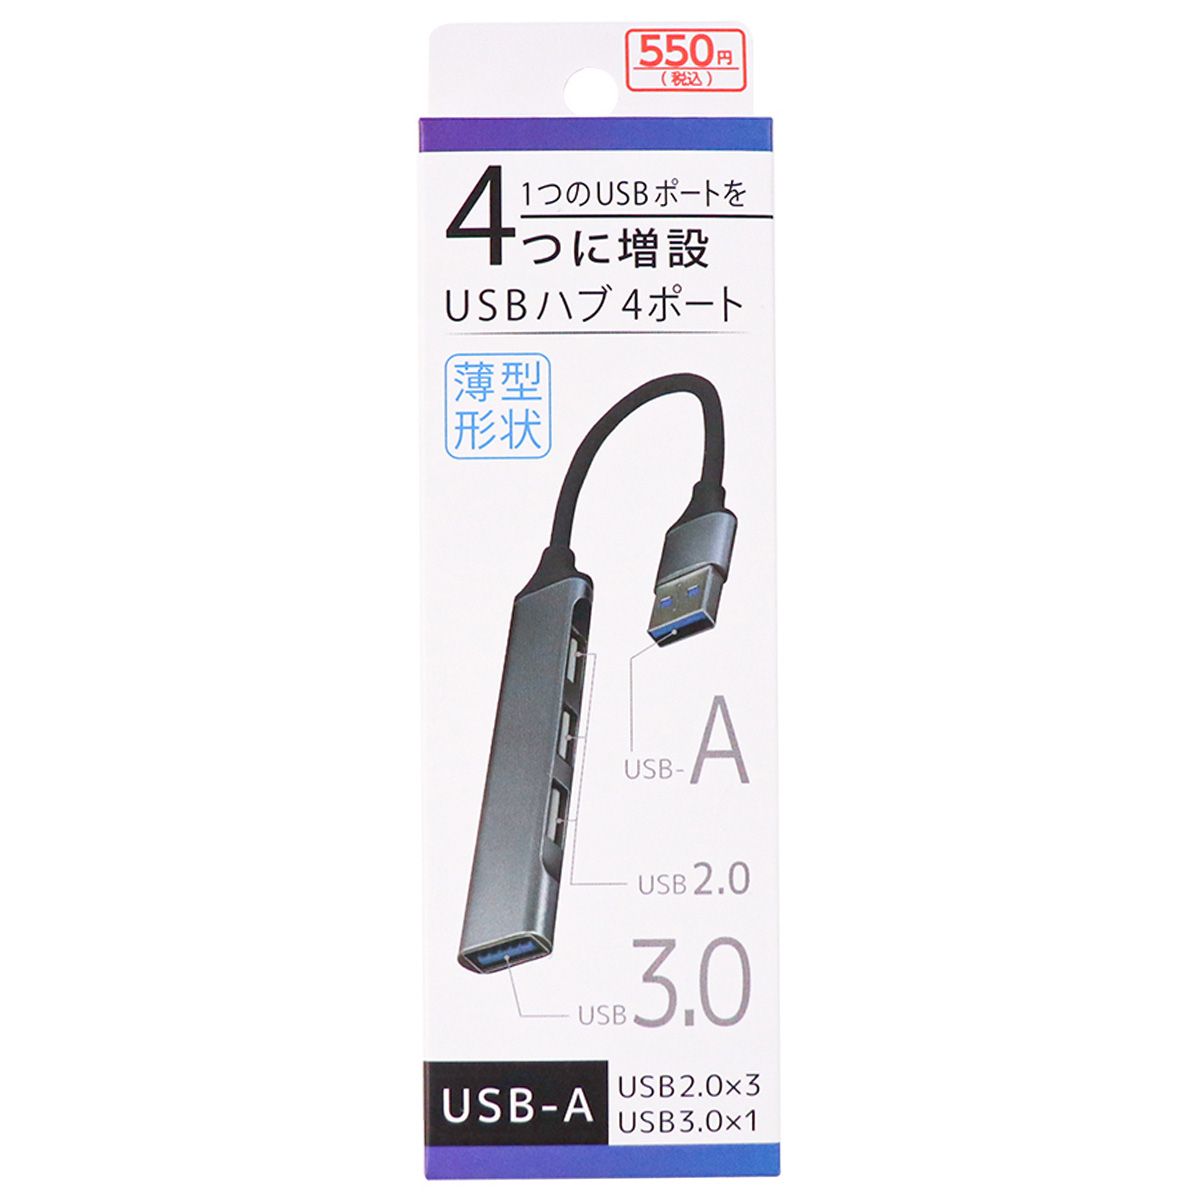 USB-Aハブ(4ポート) 9001/362720